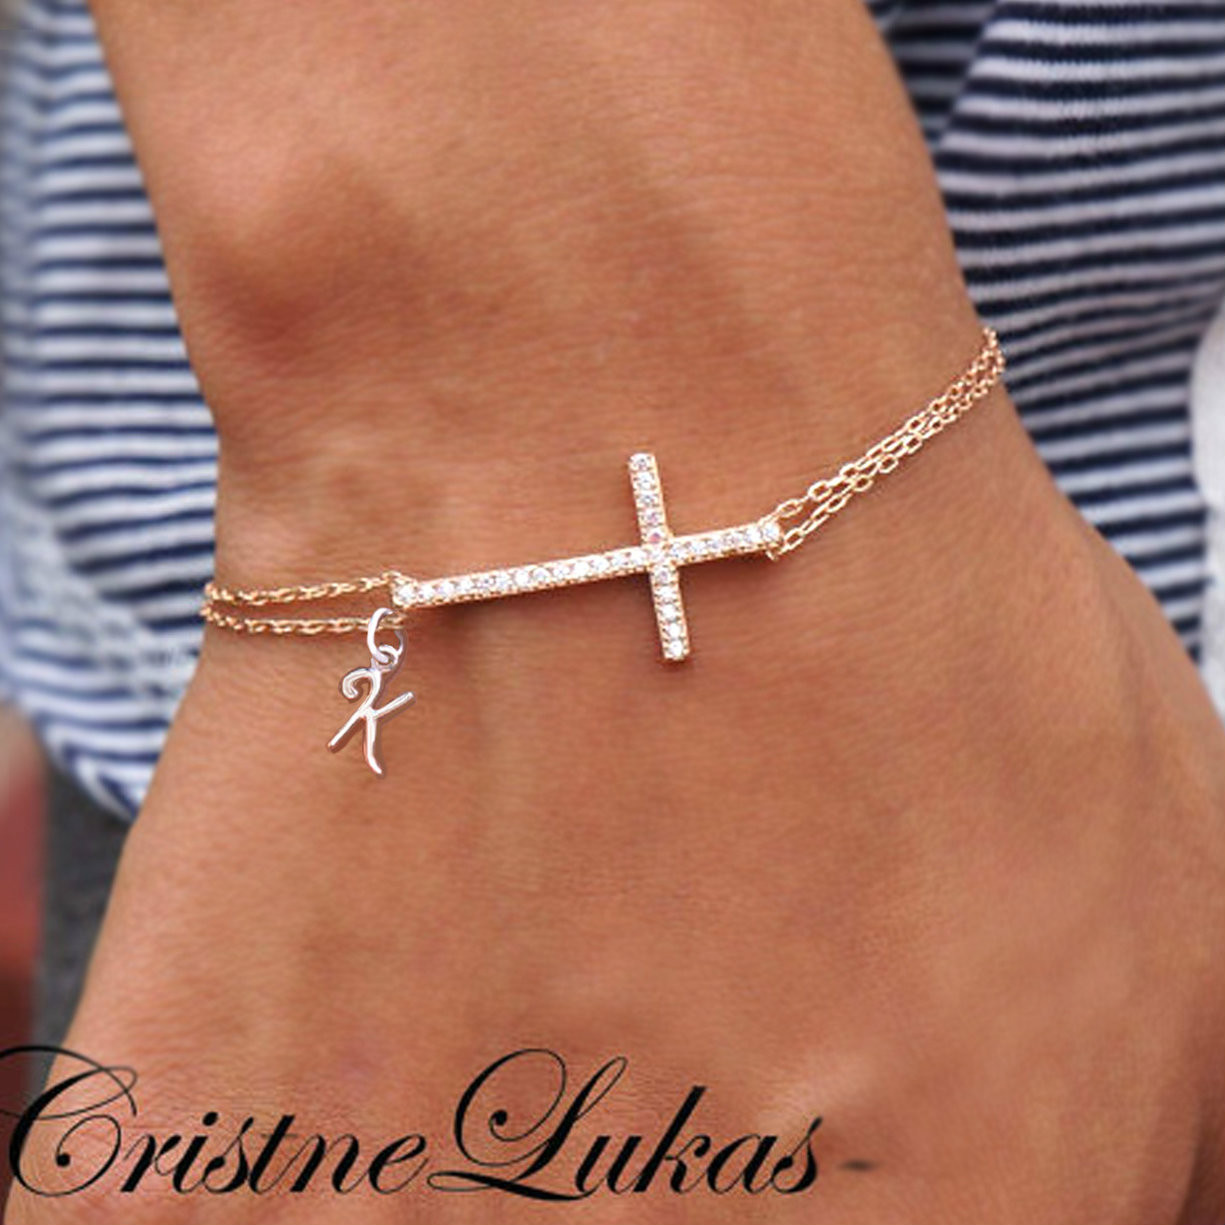 Personalized sideways cross bracelet with Cubic Zirconia stones ...